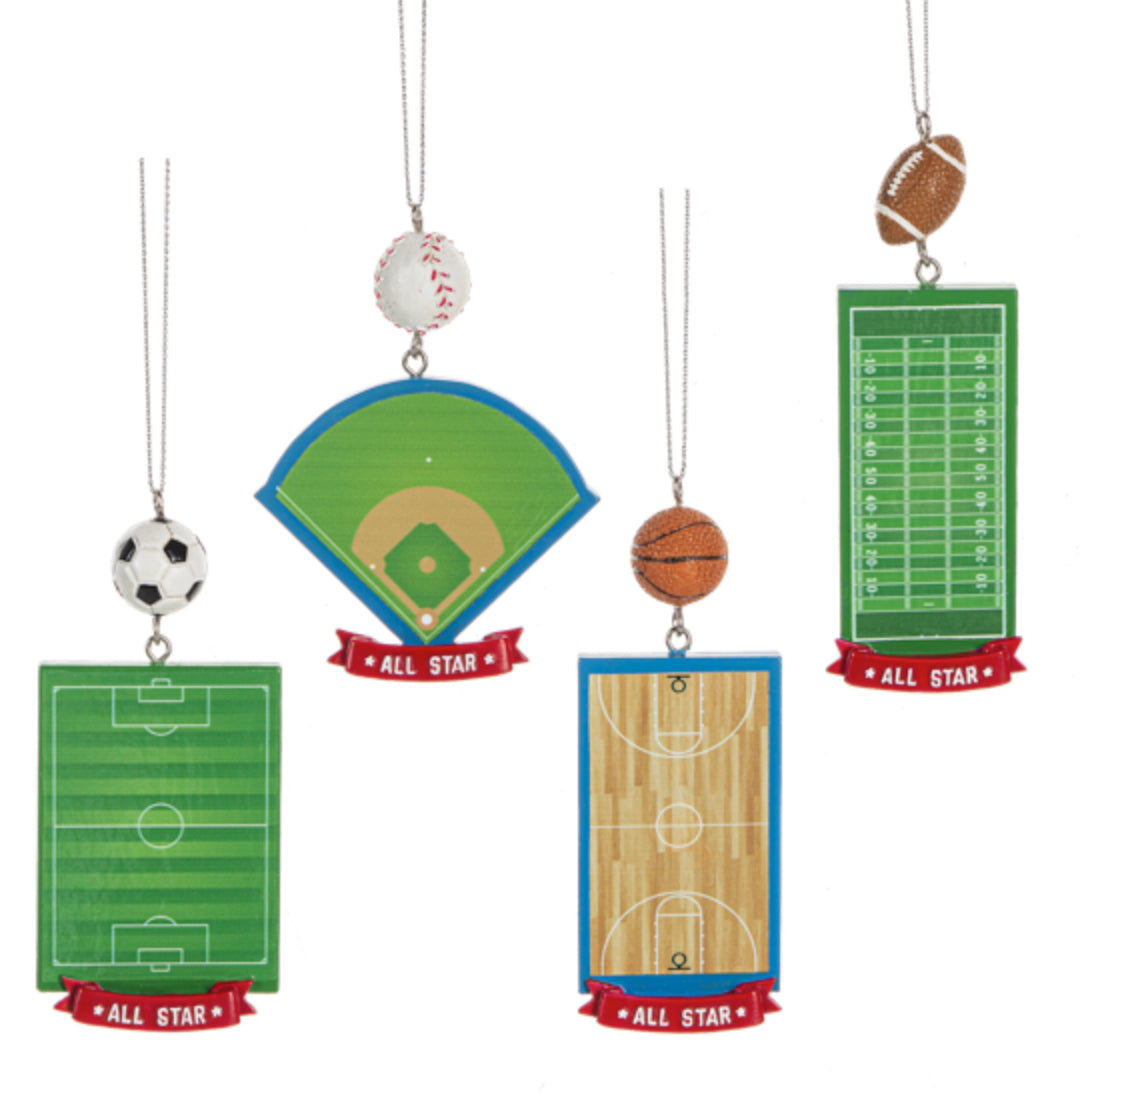 All Star Sports Field Ornament